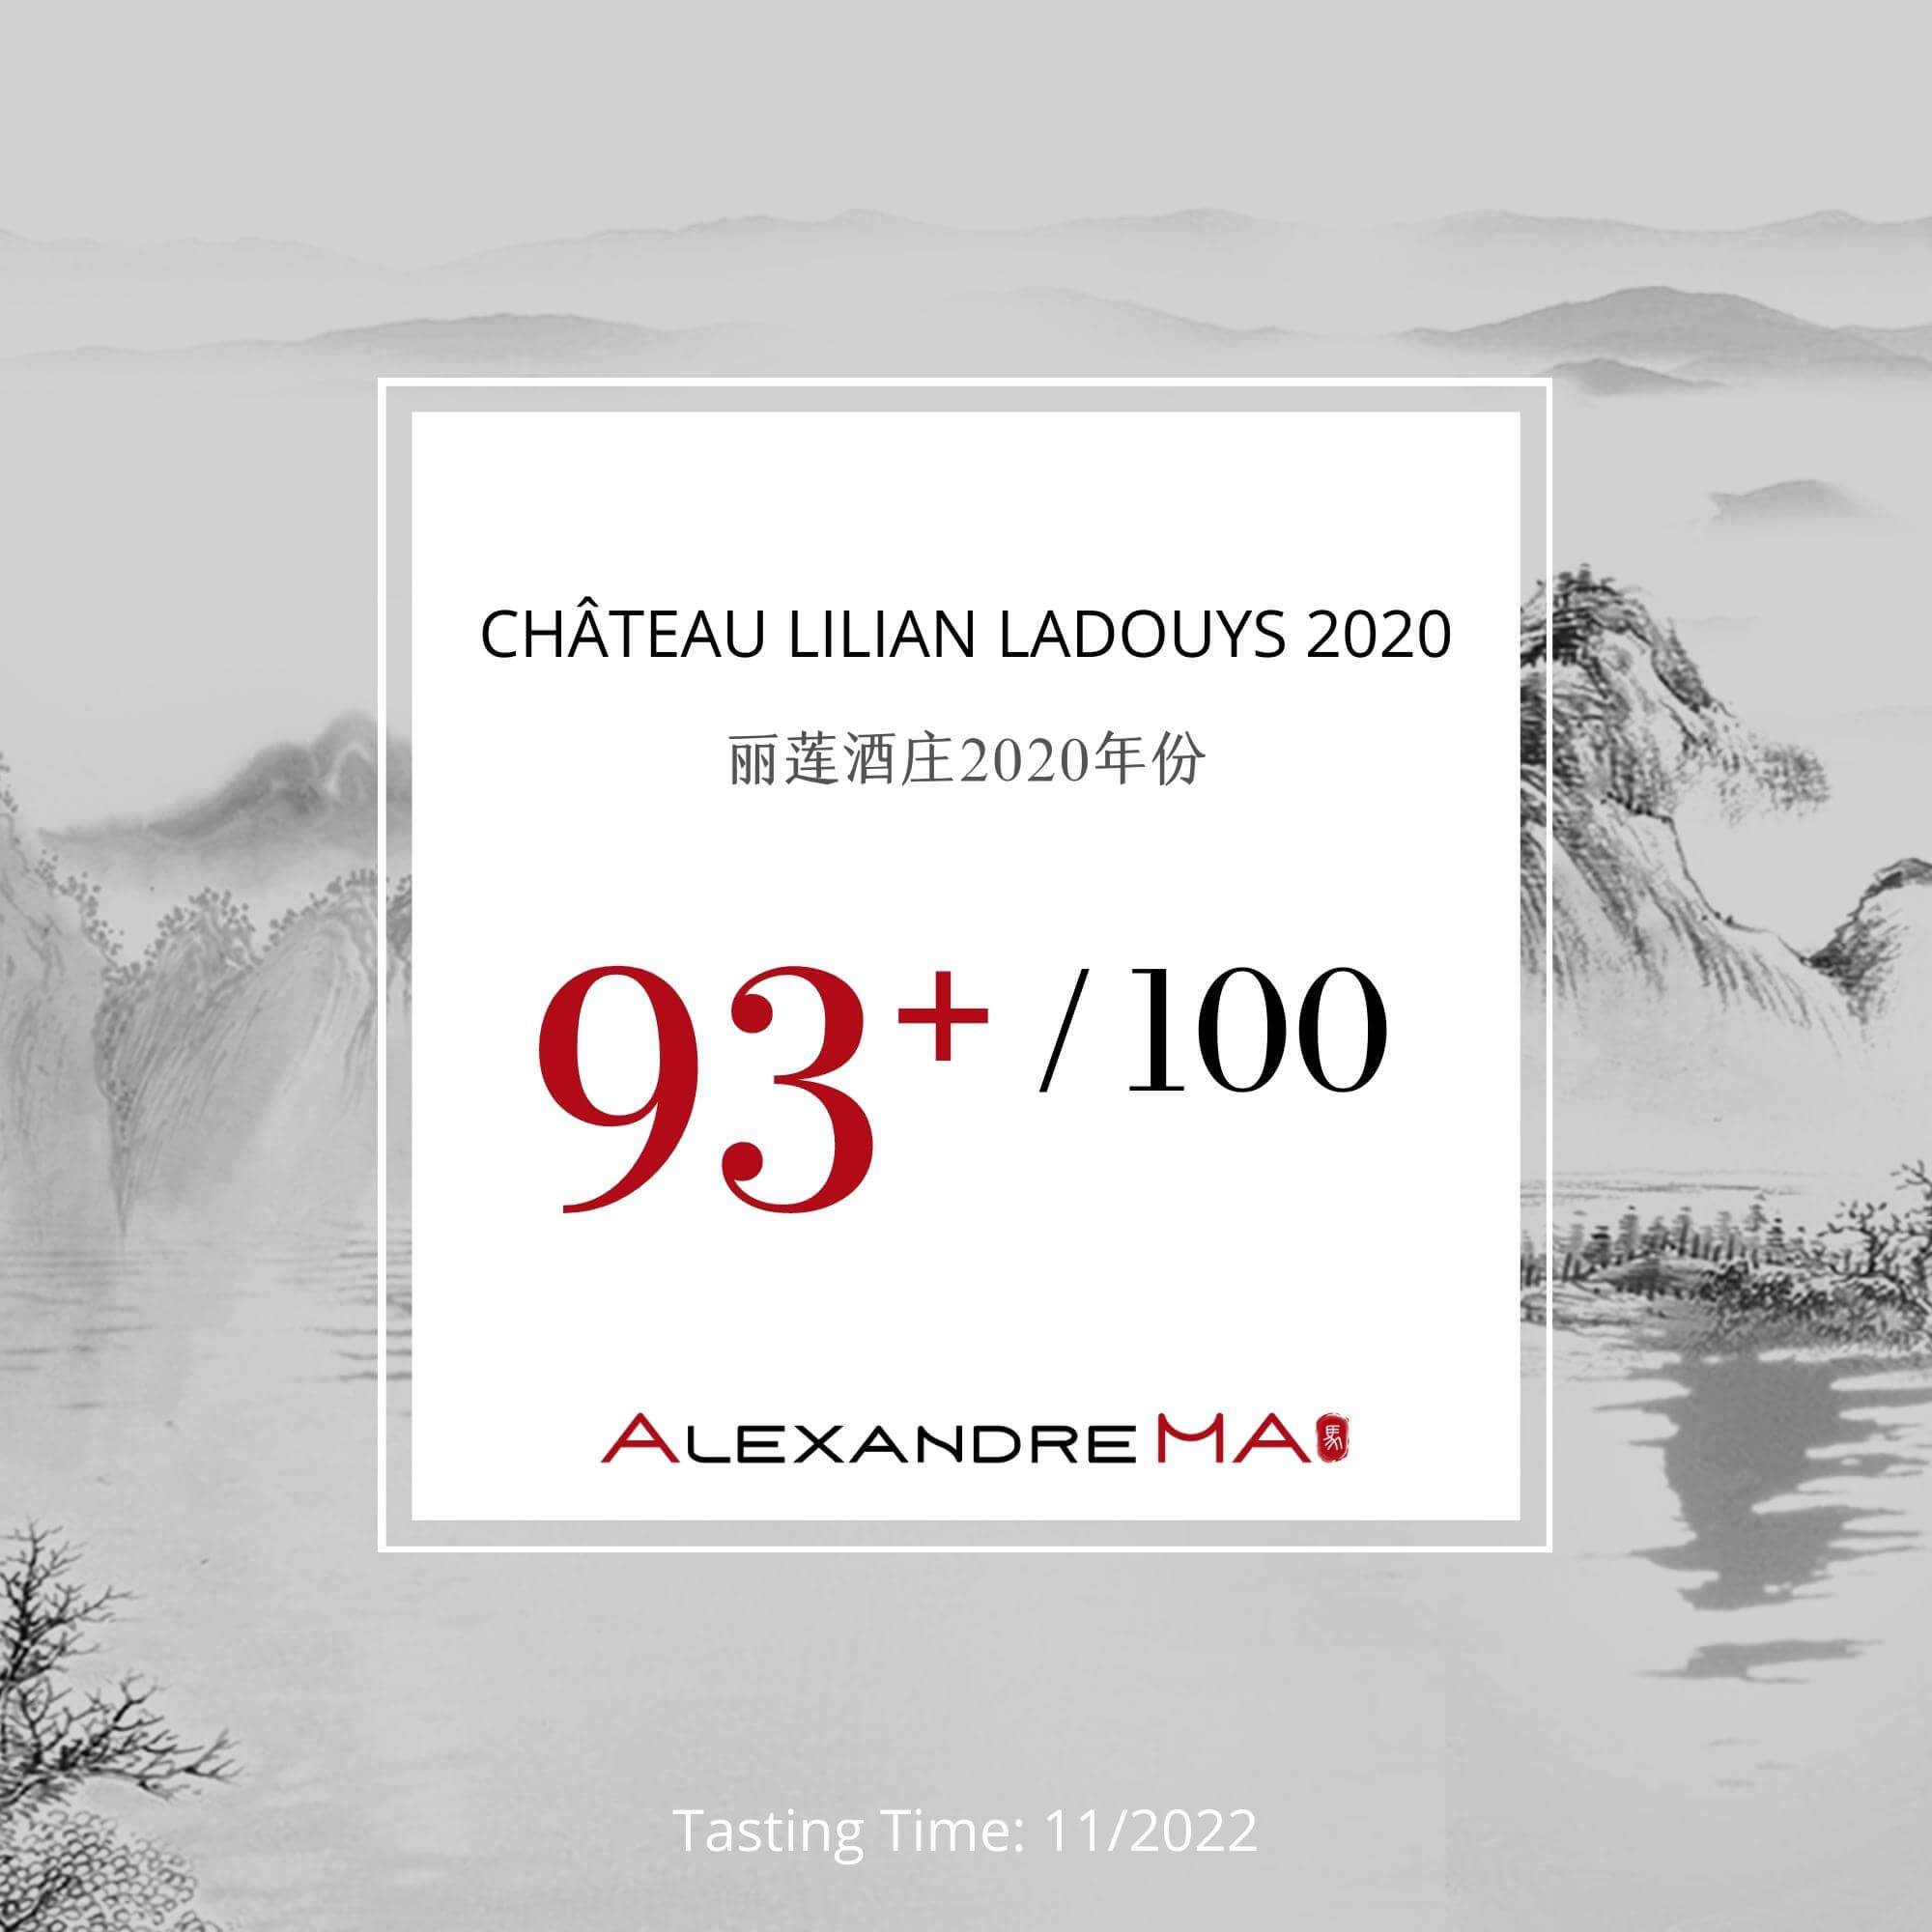 Château Lilian Ladouys 2020 - Alexandre MA